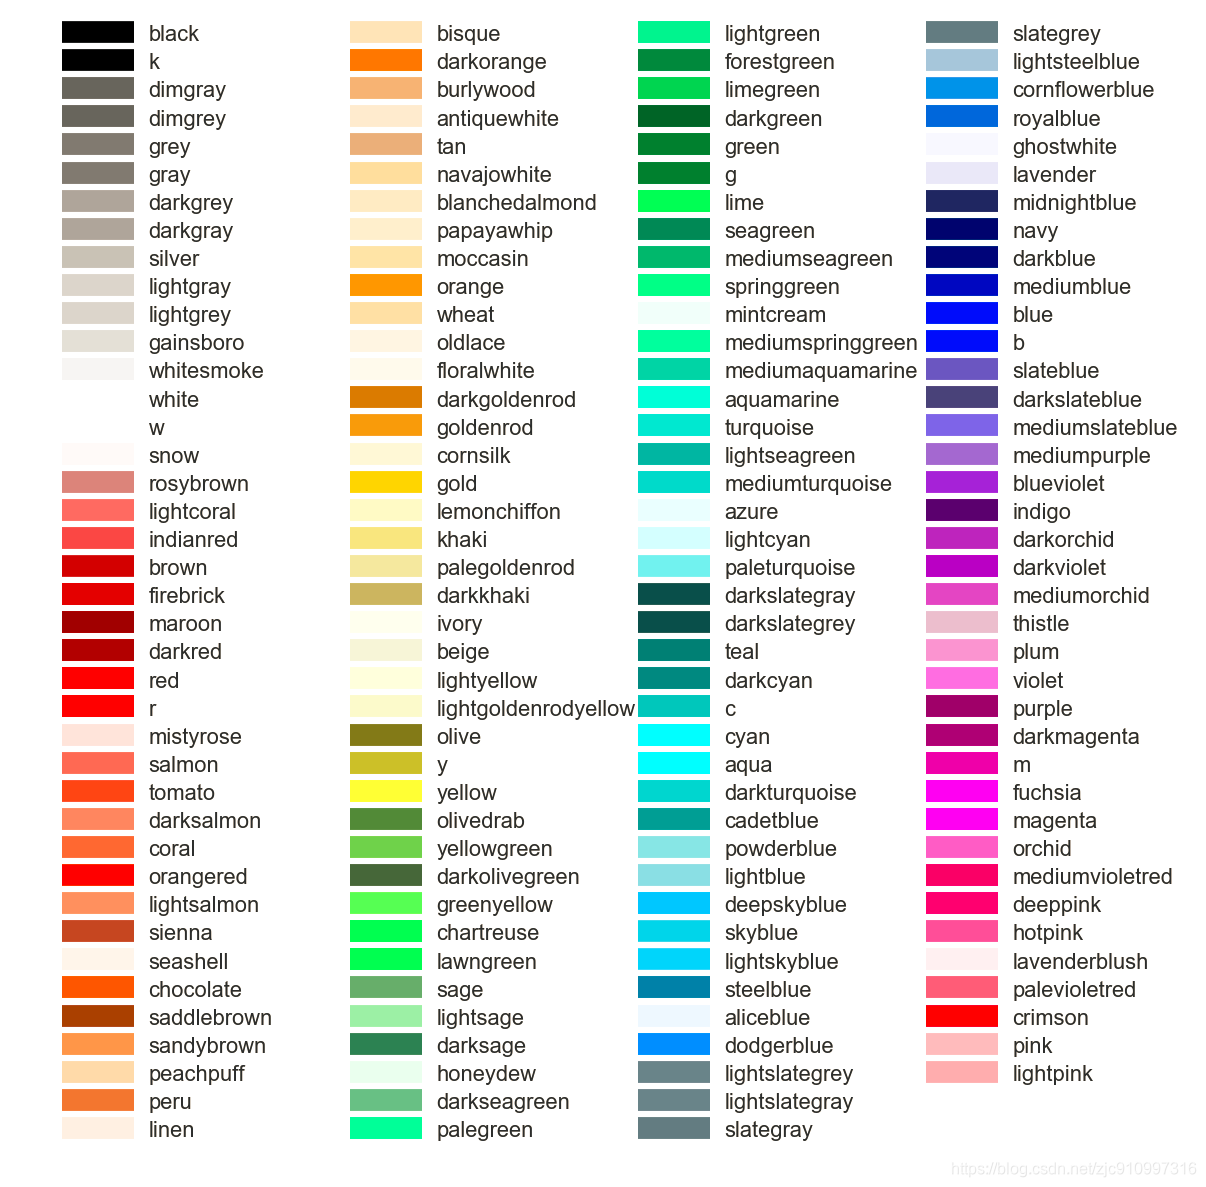 Python 颜色调整 饼状图 如何利用html码转载别人的博客 程序员信息网 Python中饼图颜色的更改 程序员信息网